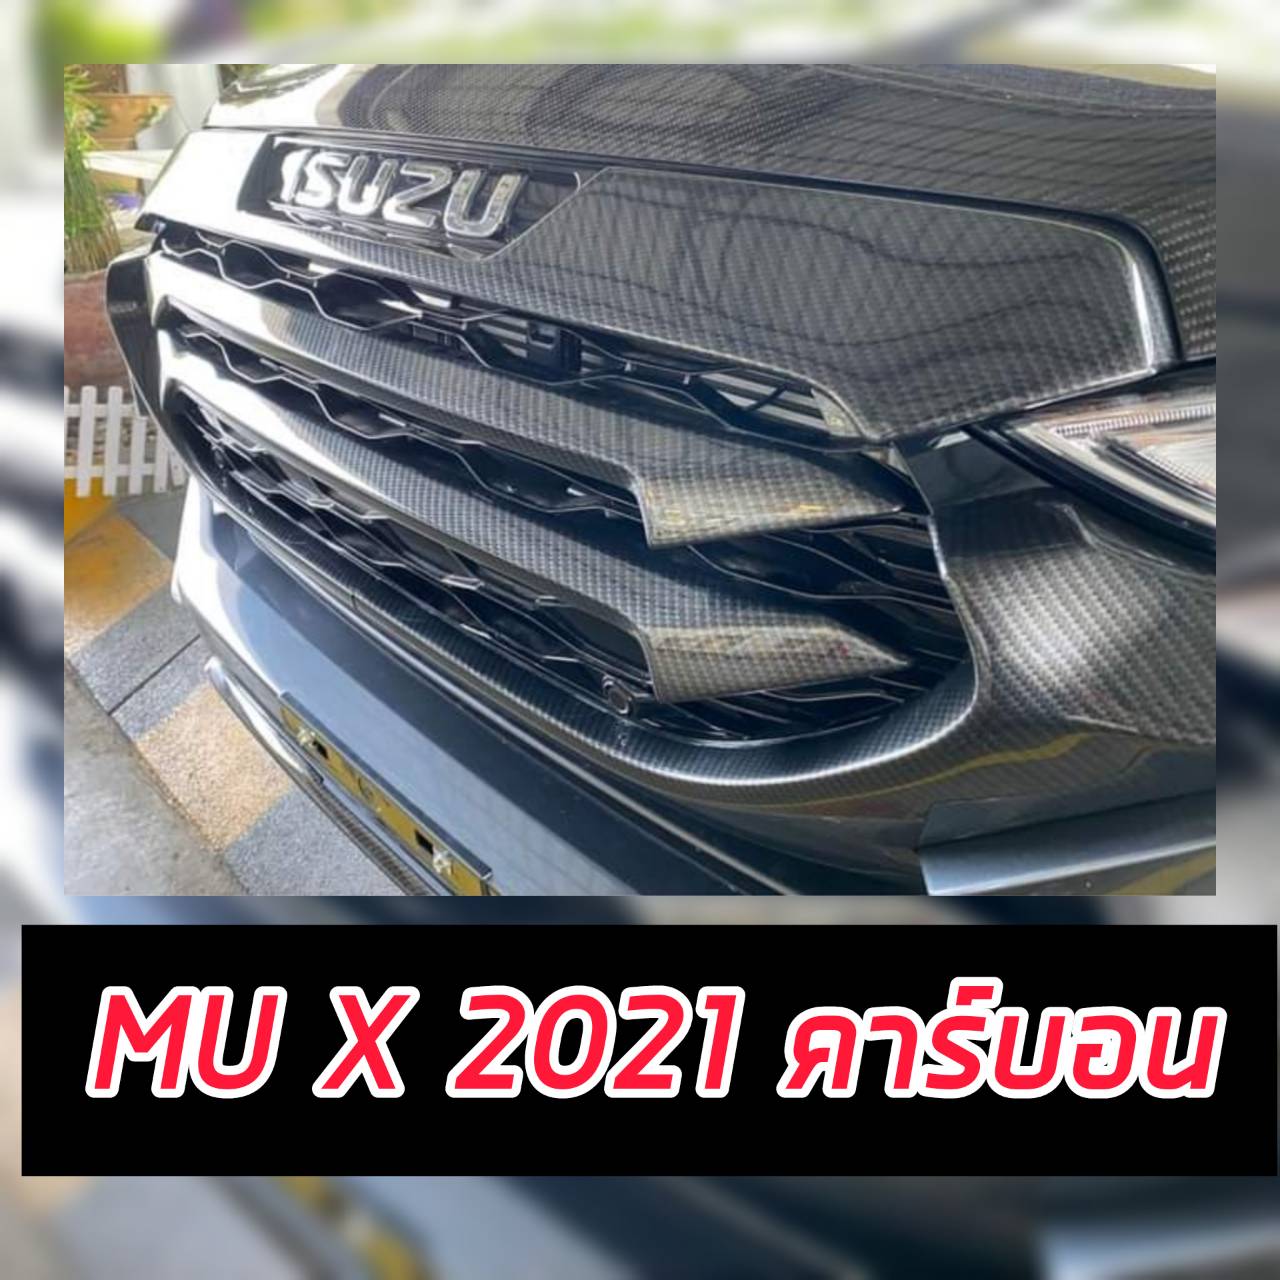 ครอบกระจังหน้า MU X 2021 2022 2023 คาร์บอน คาร์บอน  ทั้งหมด 5 ชิ้นสีคาร์บอน งานออกใหม่ แตกต่าง A.T Racing